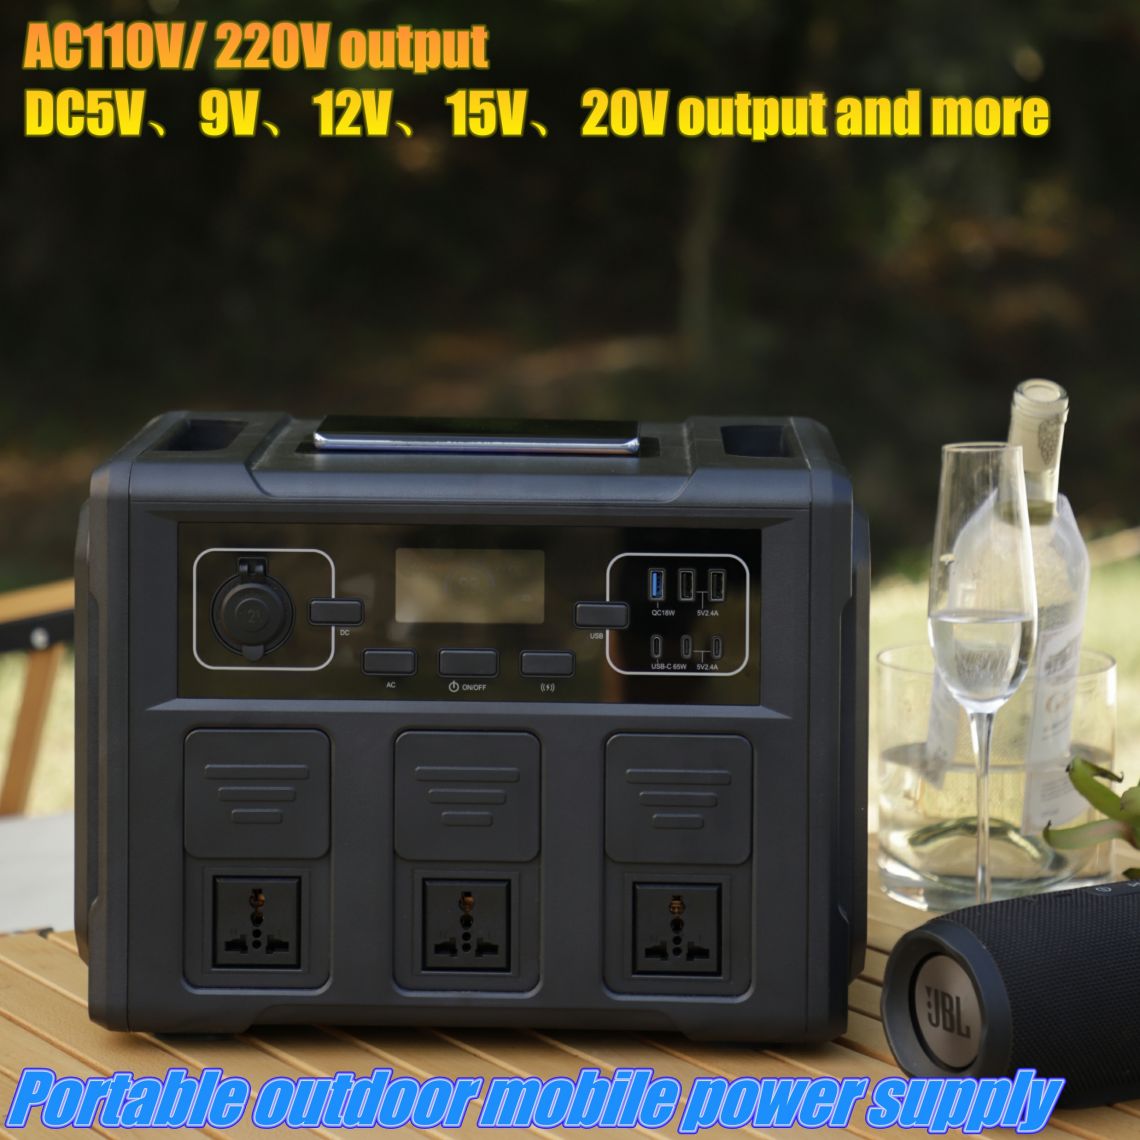 ພະລັງງານສູງກາງແຈ້ງການເກັບຮັກສາພະລັງງານໂທລະສັບມືຖືການສະຫນອງພະລັງງານ Portable Generator